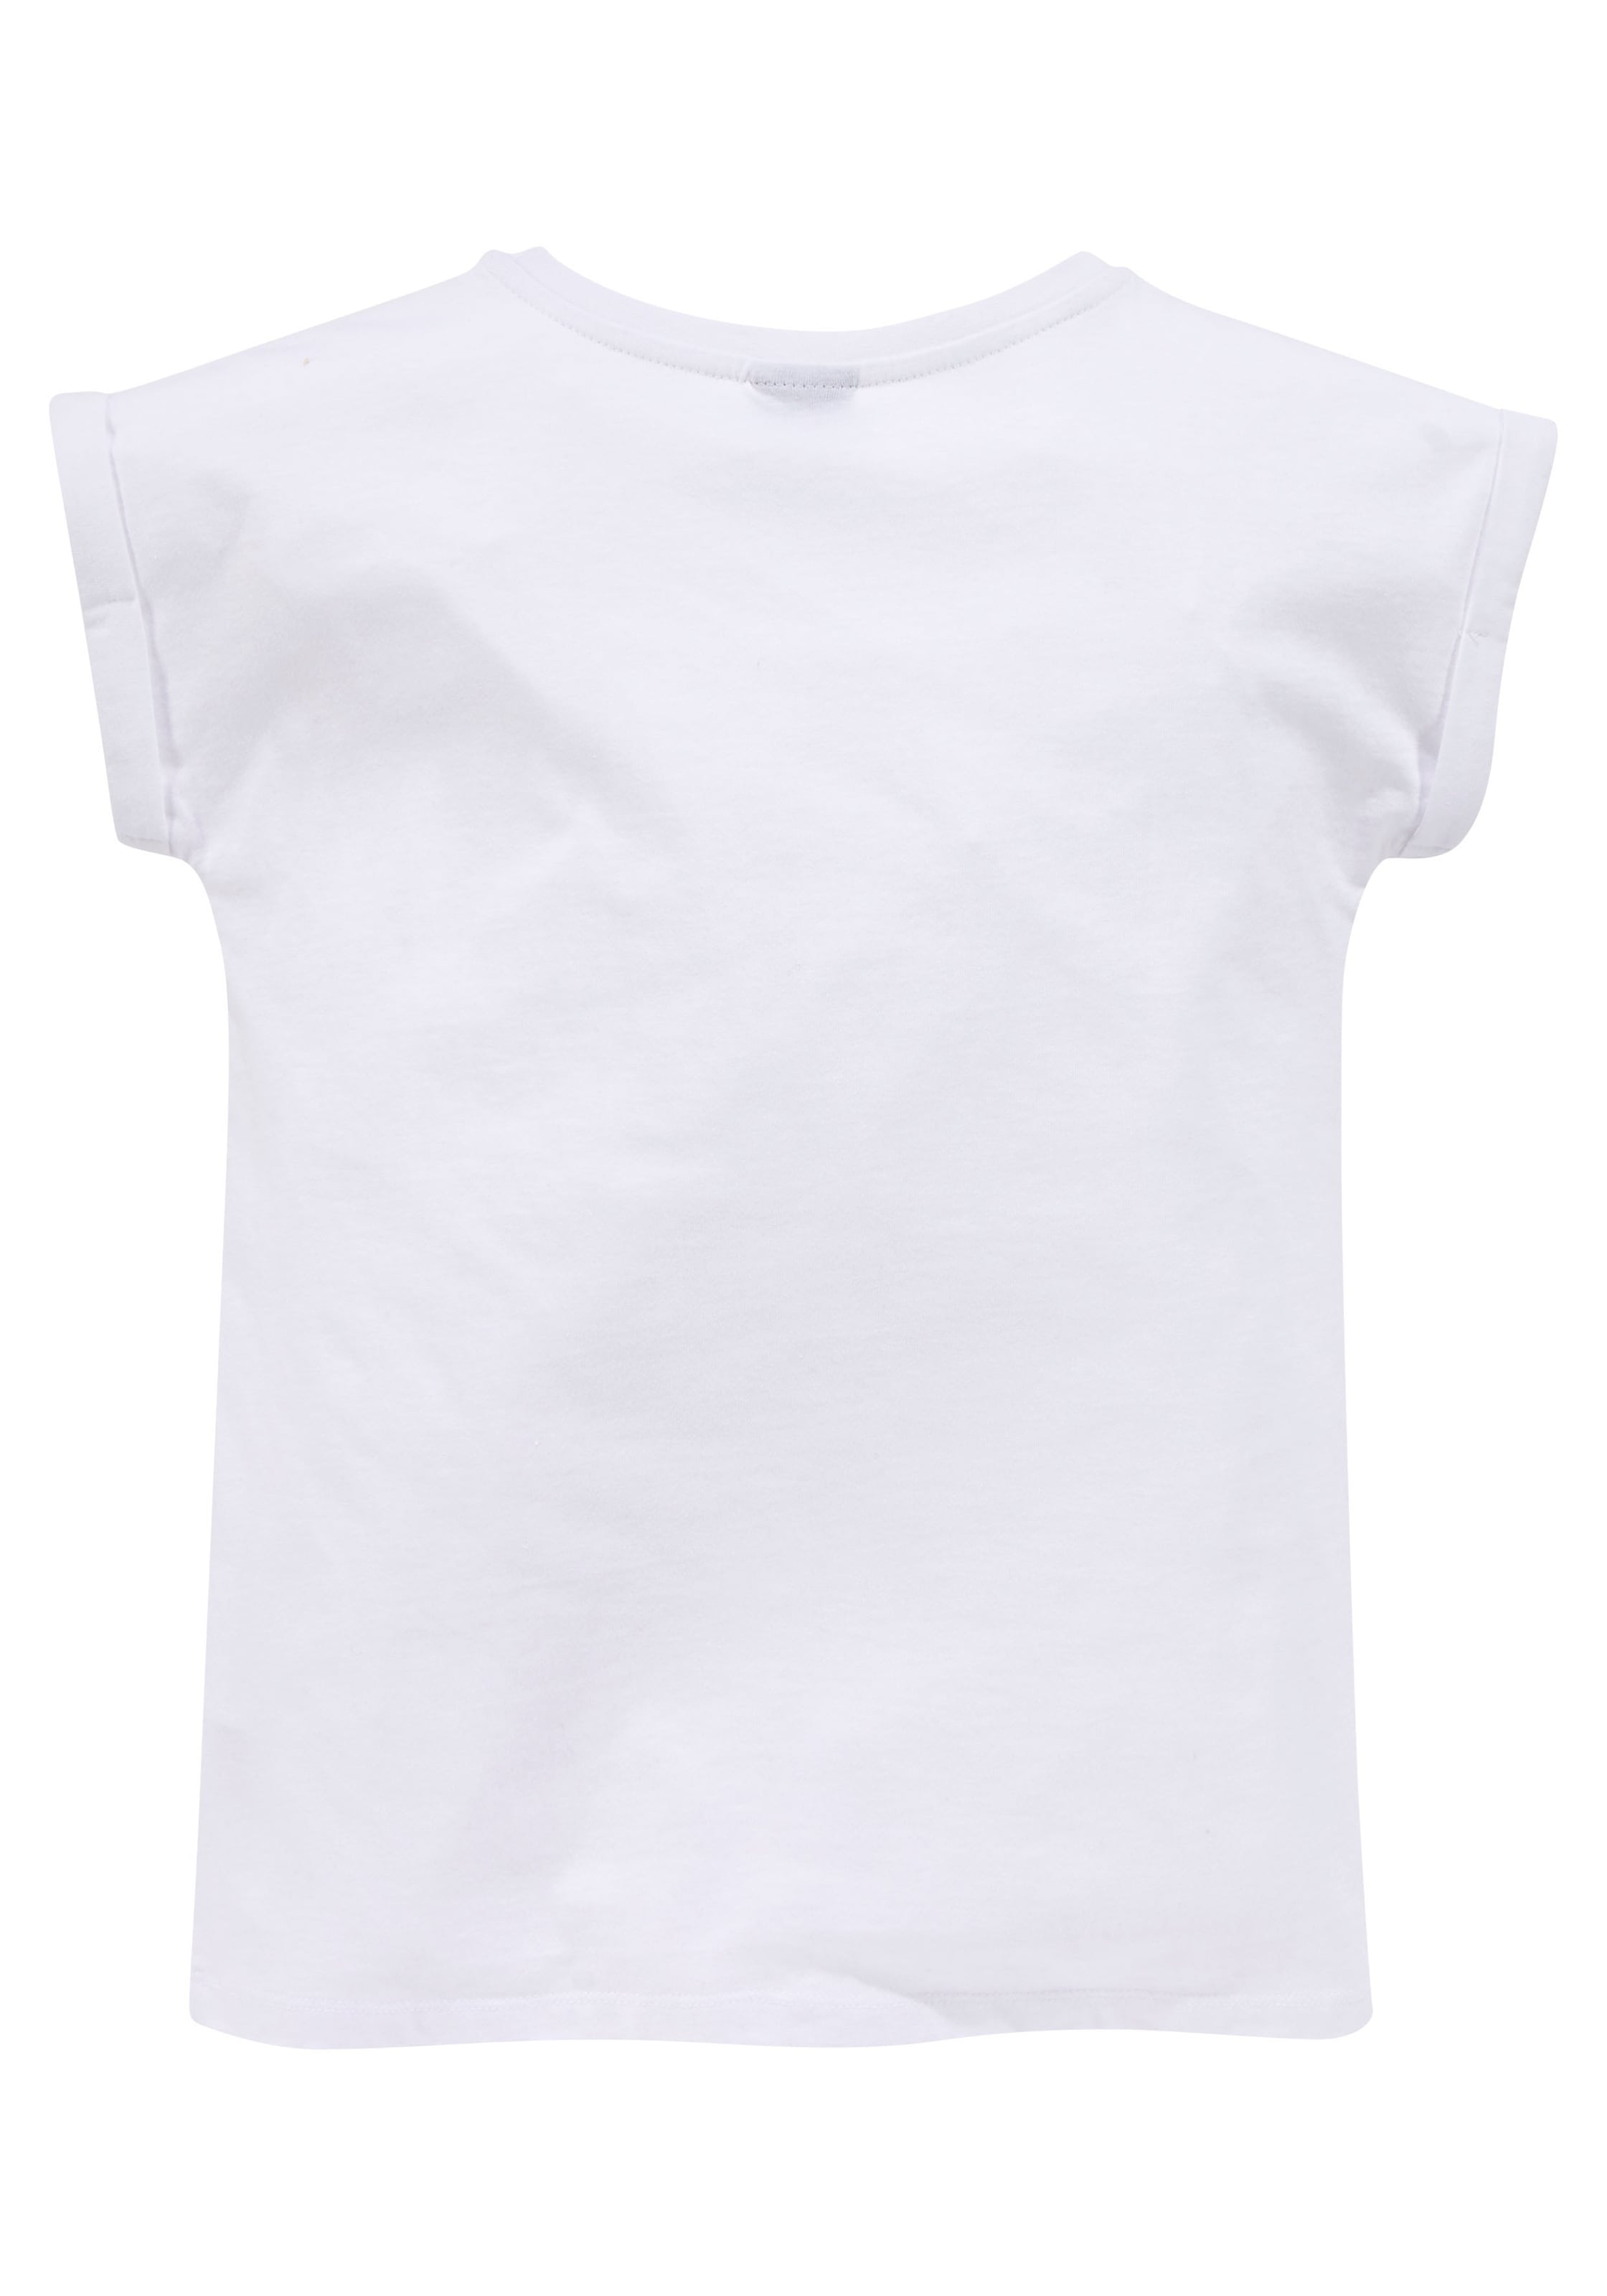 KIDSWORLD T-Shirt »NOT YOUR ERNST«, legere Form mit kleinem Ärmelaufschlag  jetzt im %Sale